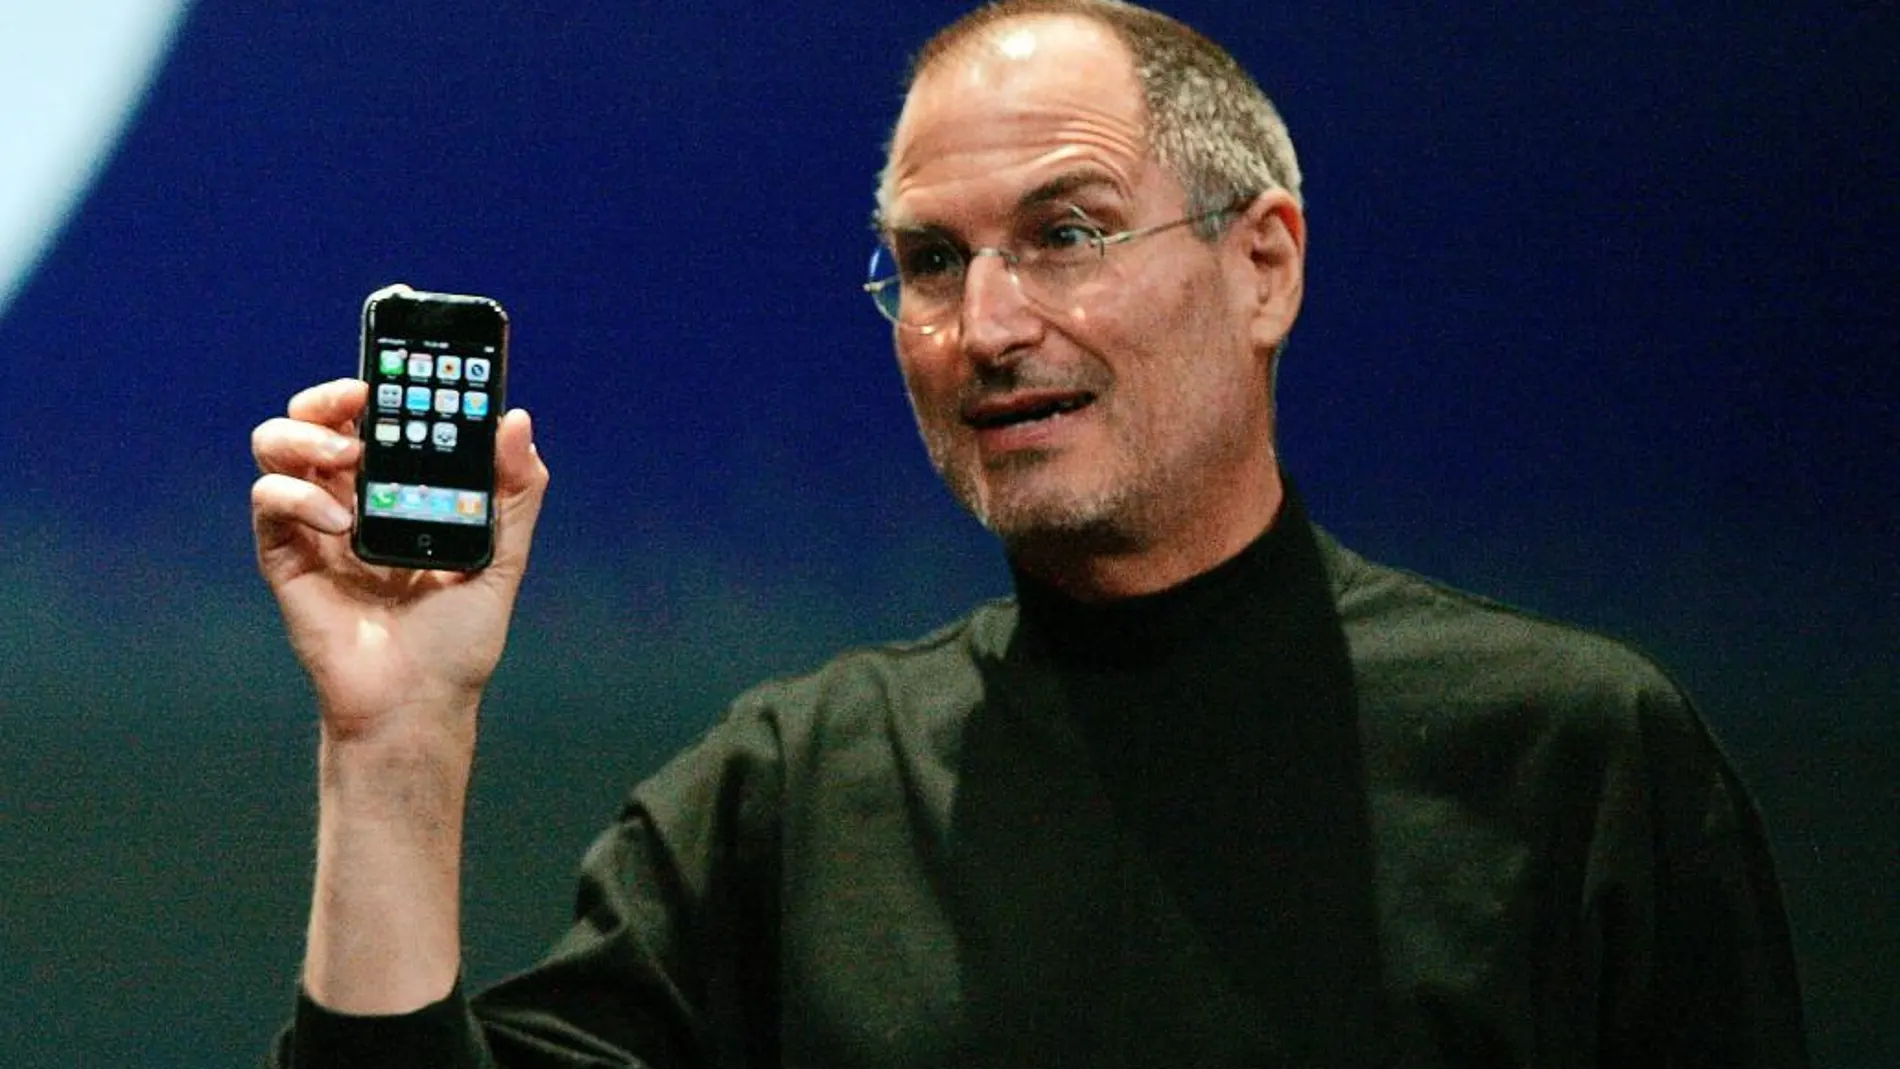 Steve Jobs, en 2007 durante la presentación del iPhone